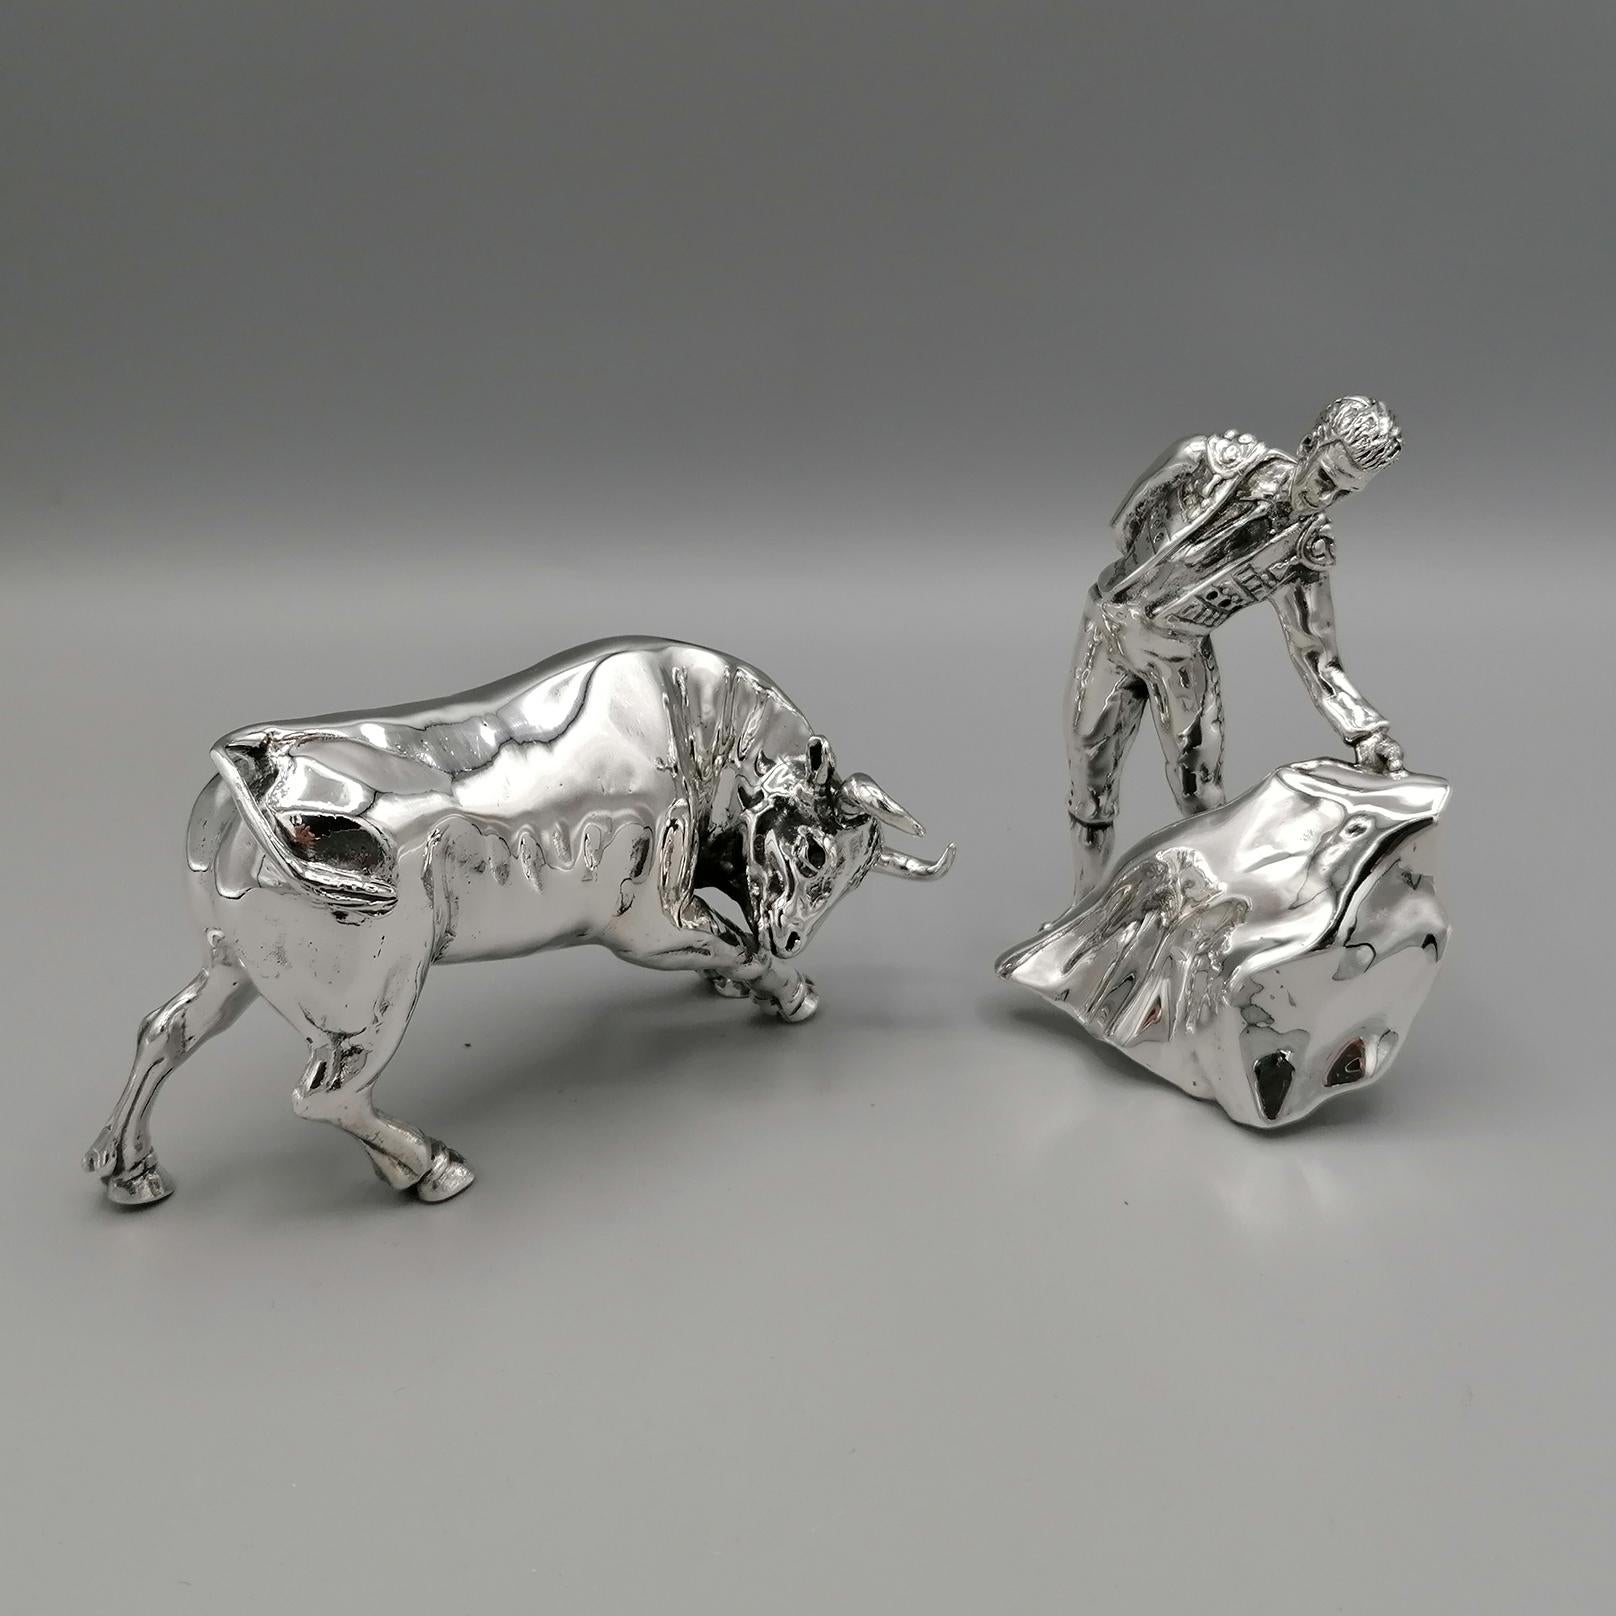 Massives Stier- und Bullfighter-Miniatur aus Sterlingsilber.
Der Stier und der Stier wurden mit der Gusstechnik hergestellt und dann gemeißelt, um die Details hervorzuheben.
Die Präzision der Silberschmiede, die Skulptur angefertigt haben,